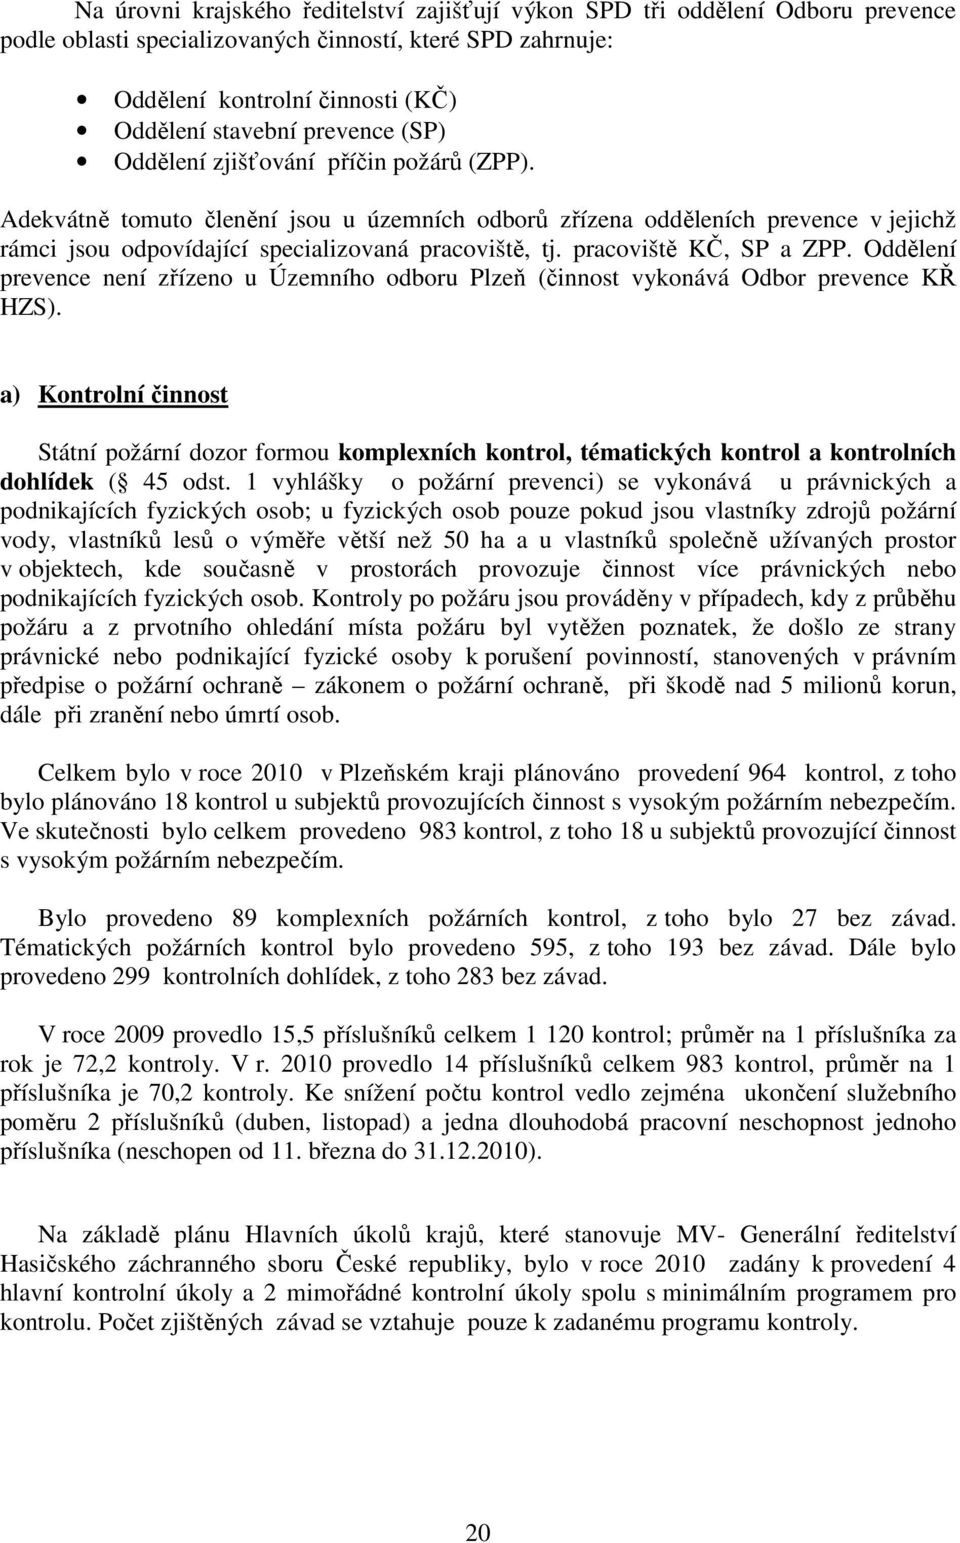 pracoviště KČ, SP a ZPP. Oddělení prevence není zřízeno u Územního odboru Plzeň (činnost vykonává Odbor prevence KŘ HZS).